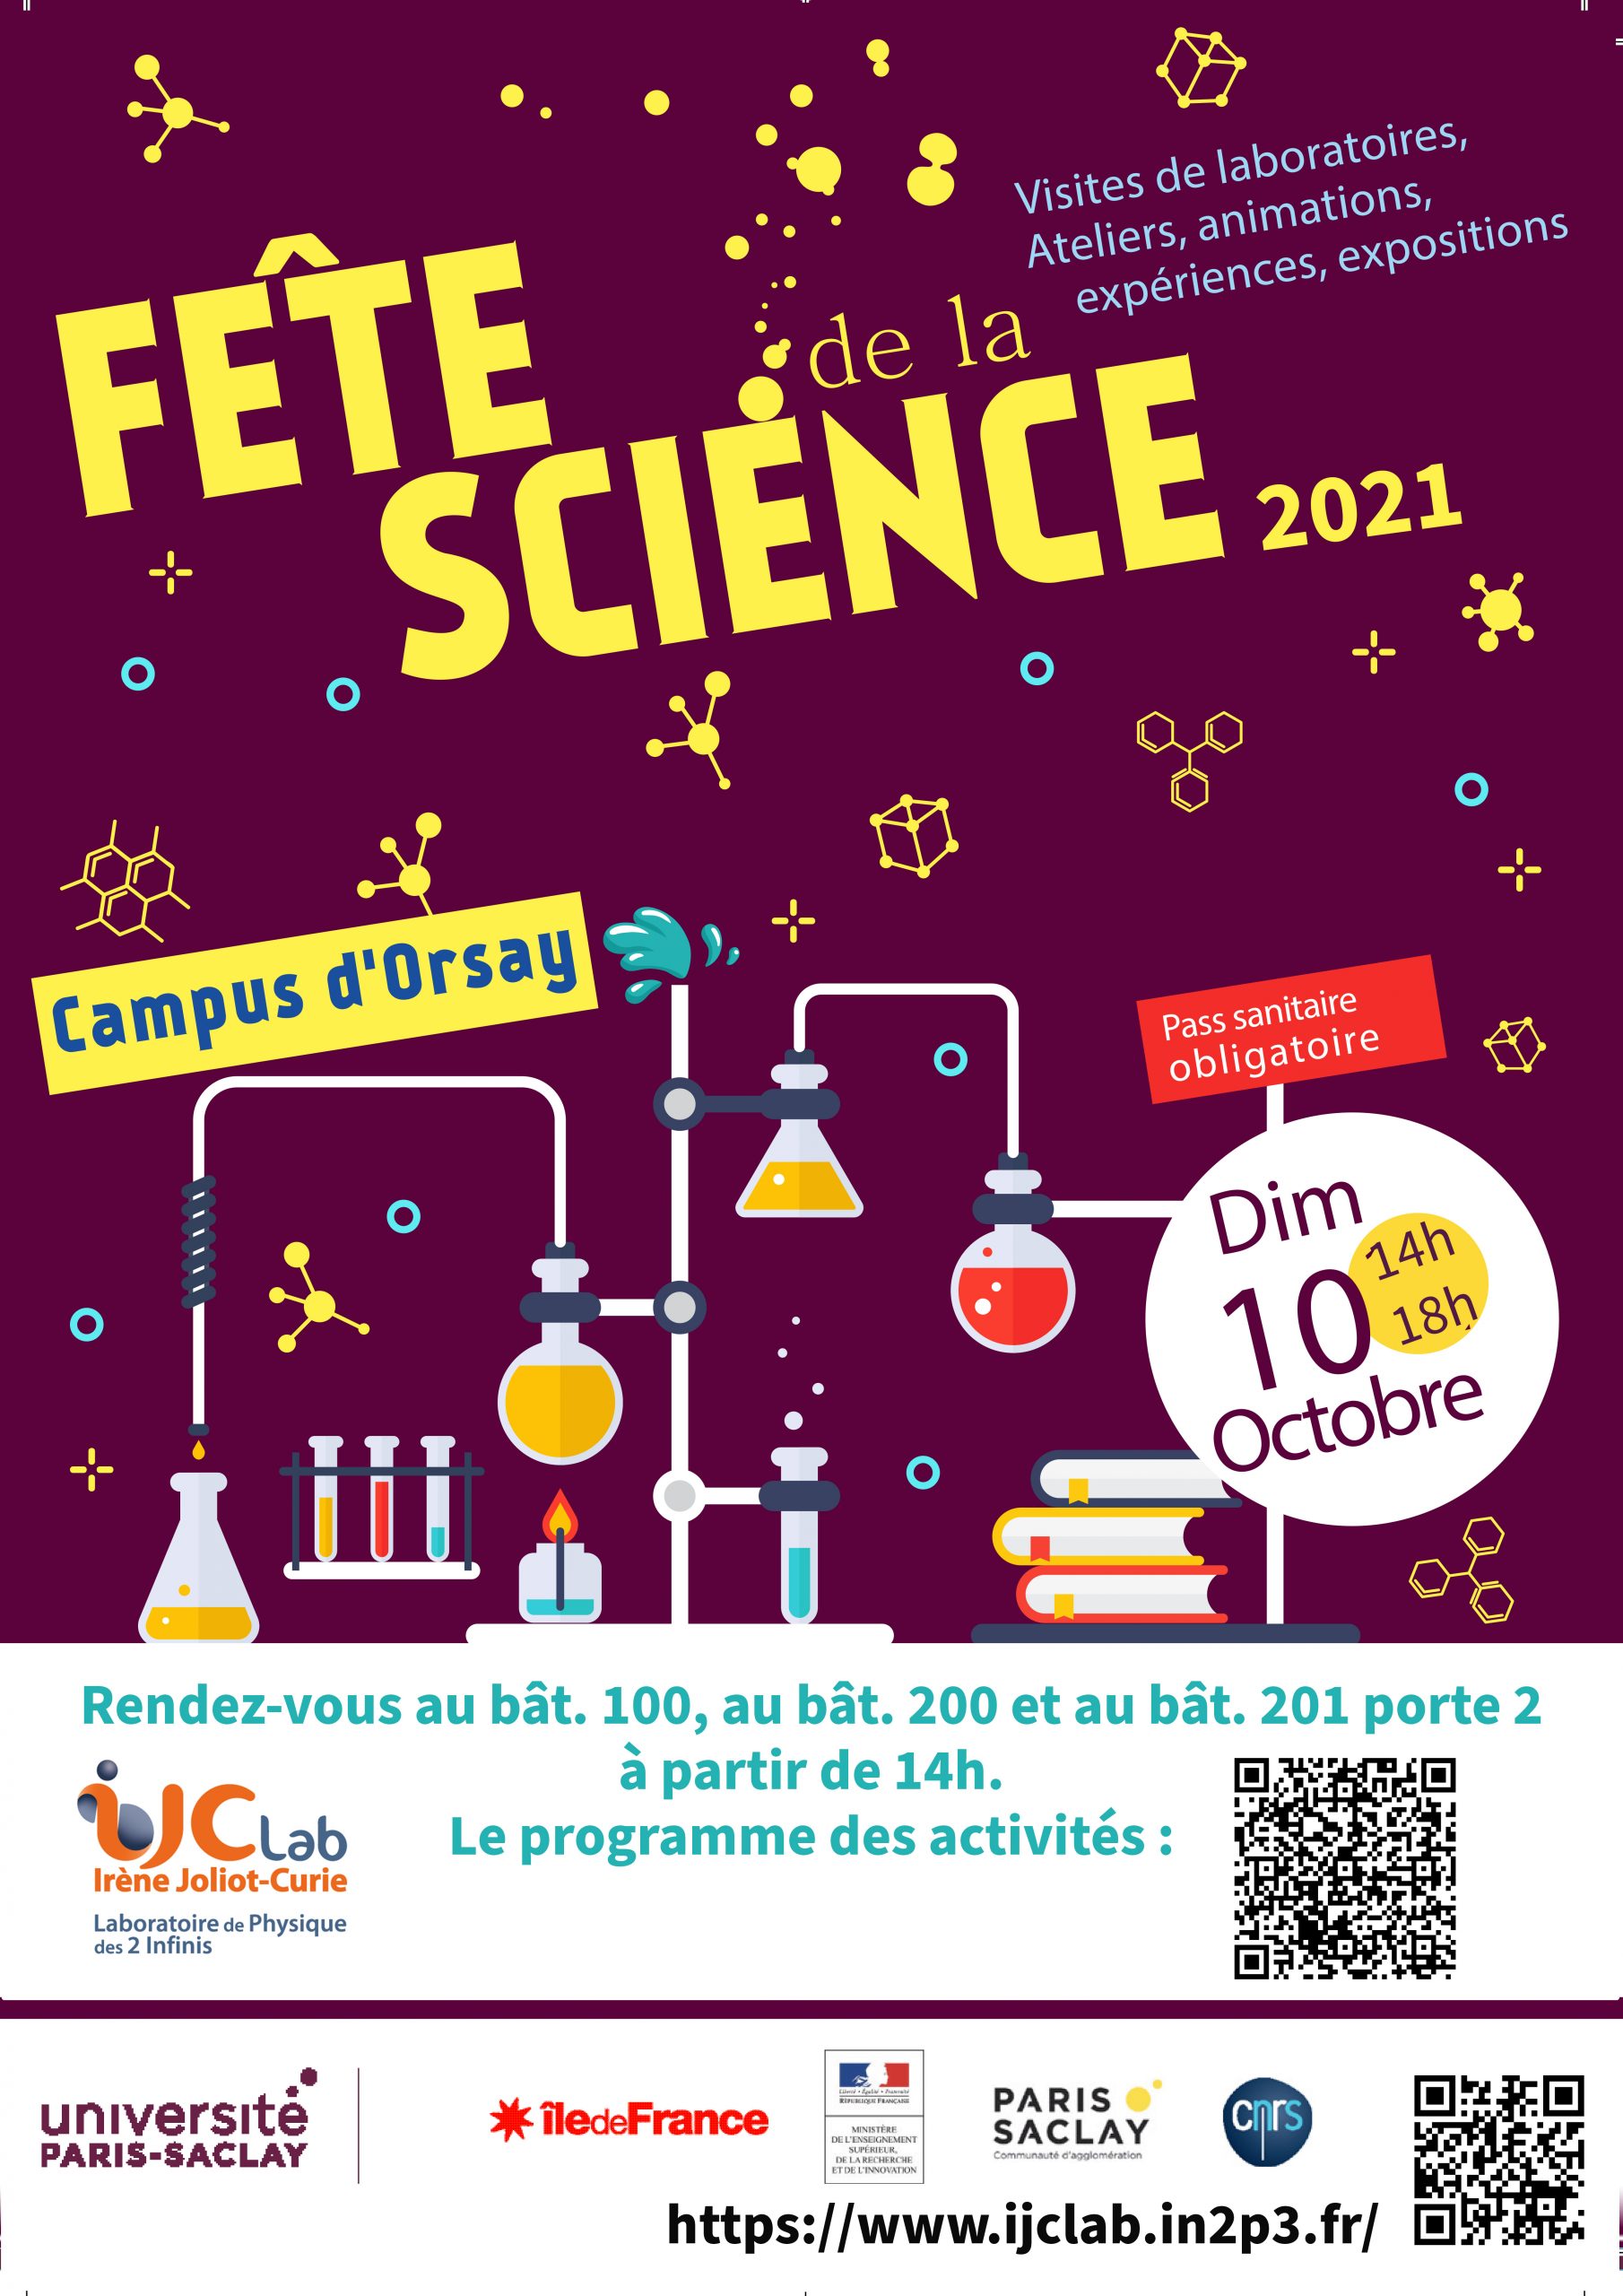 La fête de la science à IJCLab les 8 et 10 octobre 2021